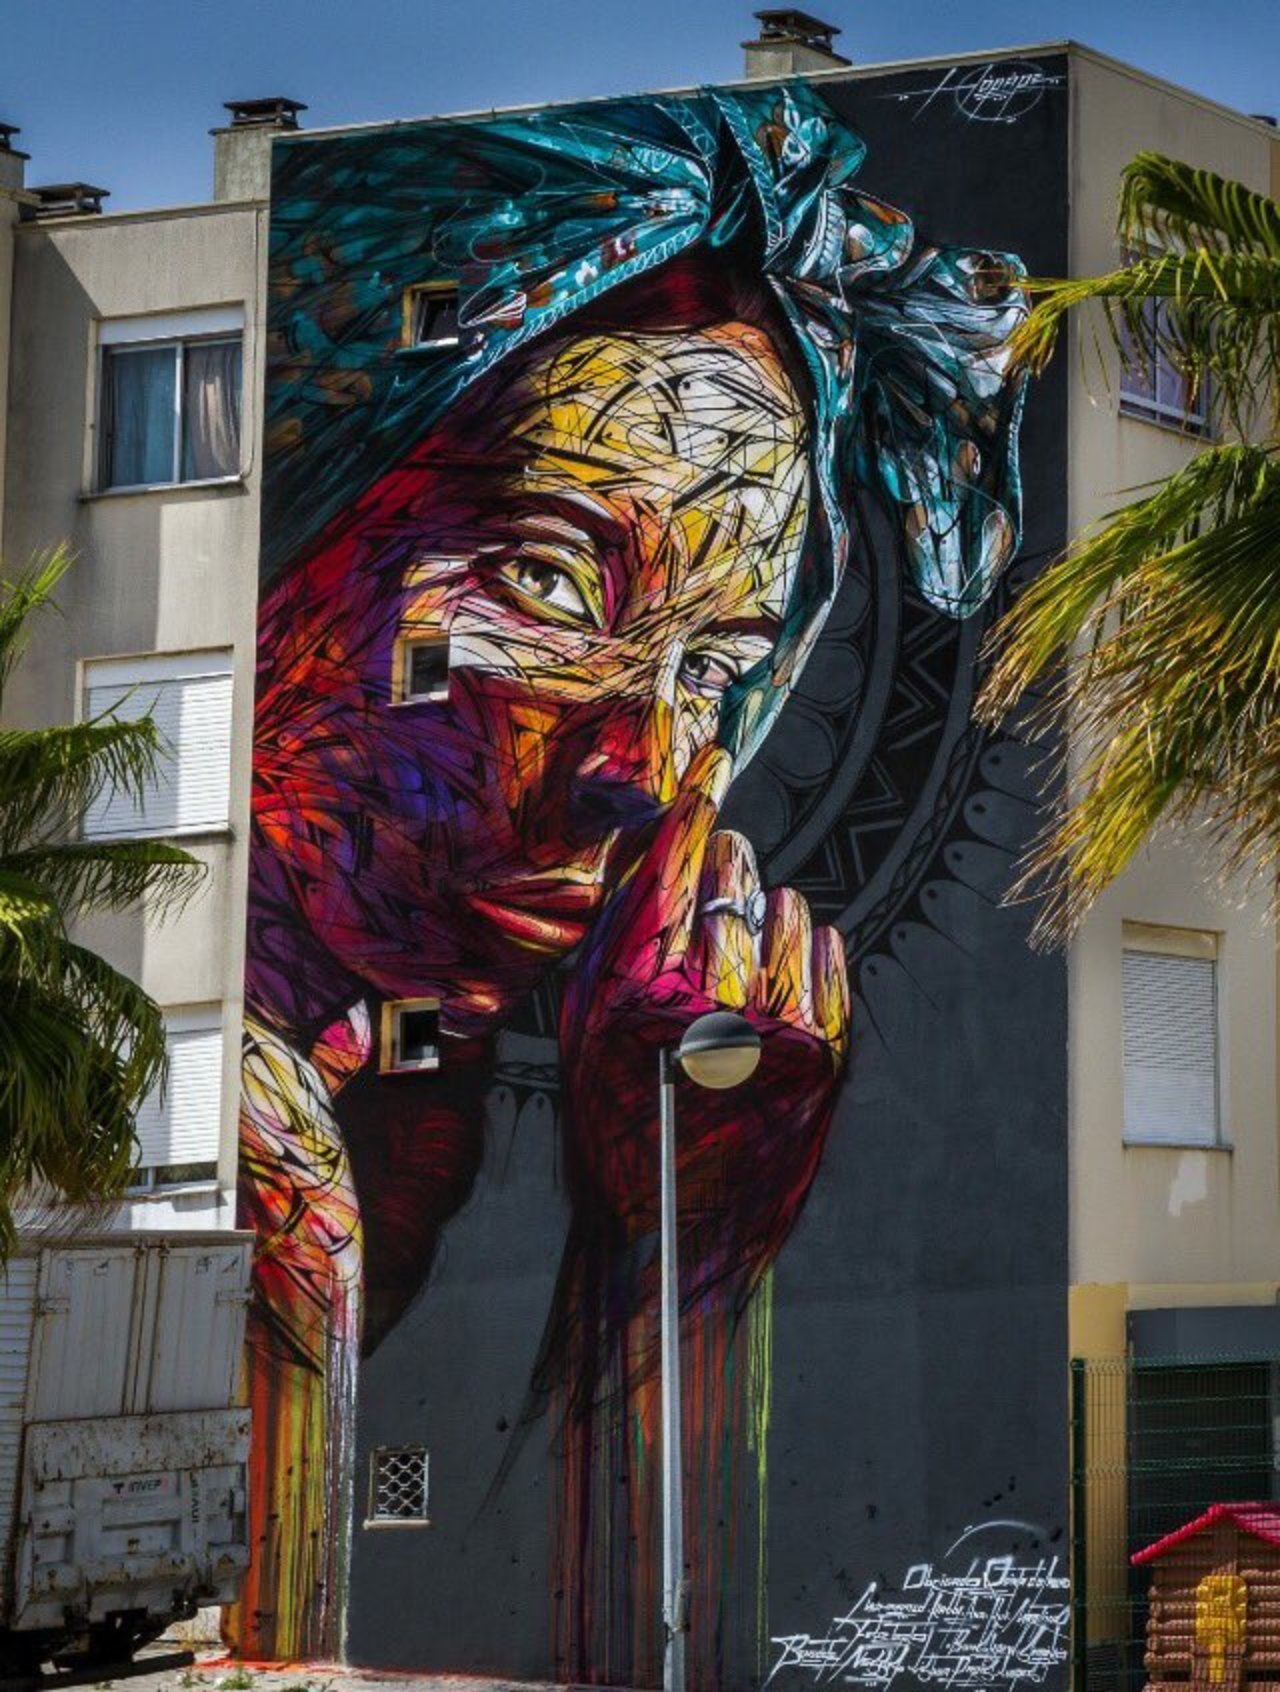 New Street Art by Hopare found in Quinta do Monte Portugal #art #mural #graffiti #streetart https://t.co/upaP5RHhYt